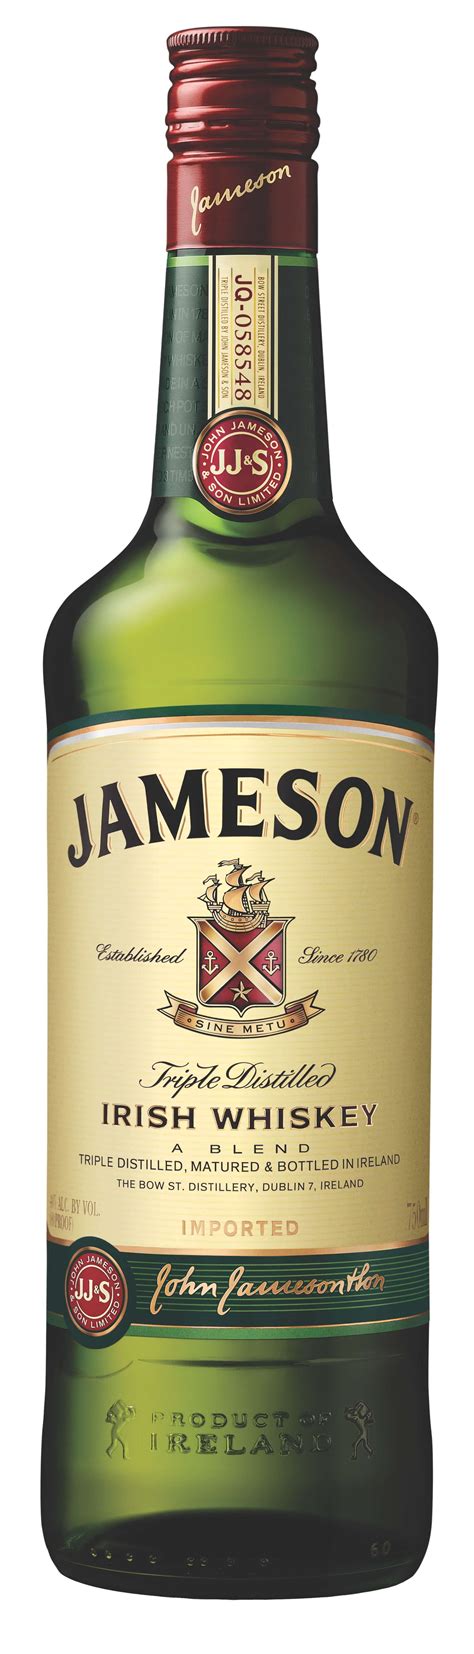 Jameson Bottle Sizes Best Pictures And Decription Forwardset Com